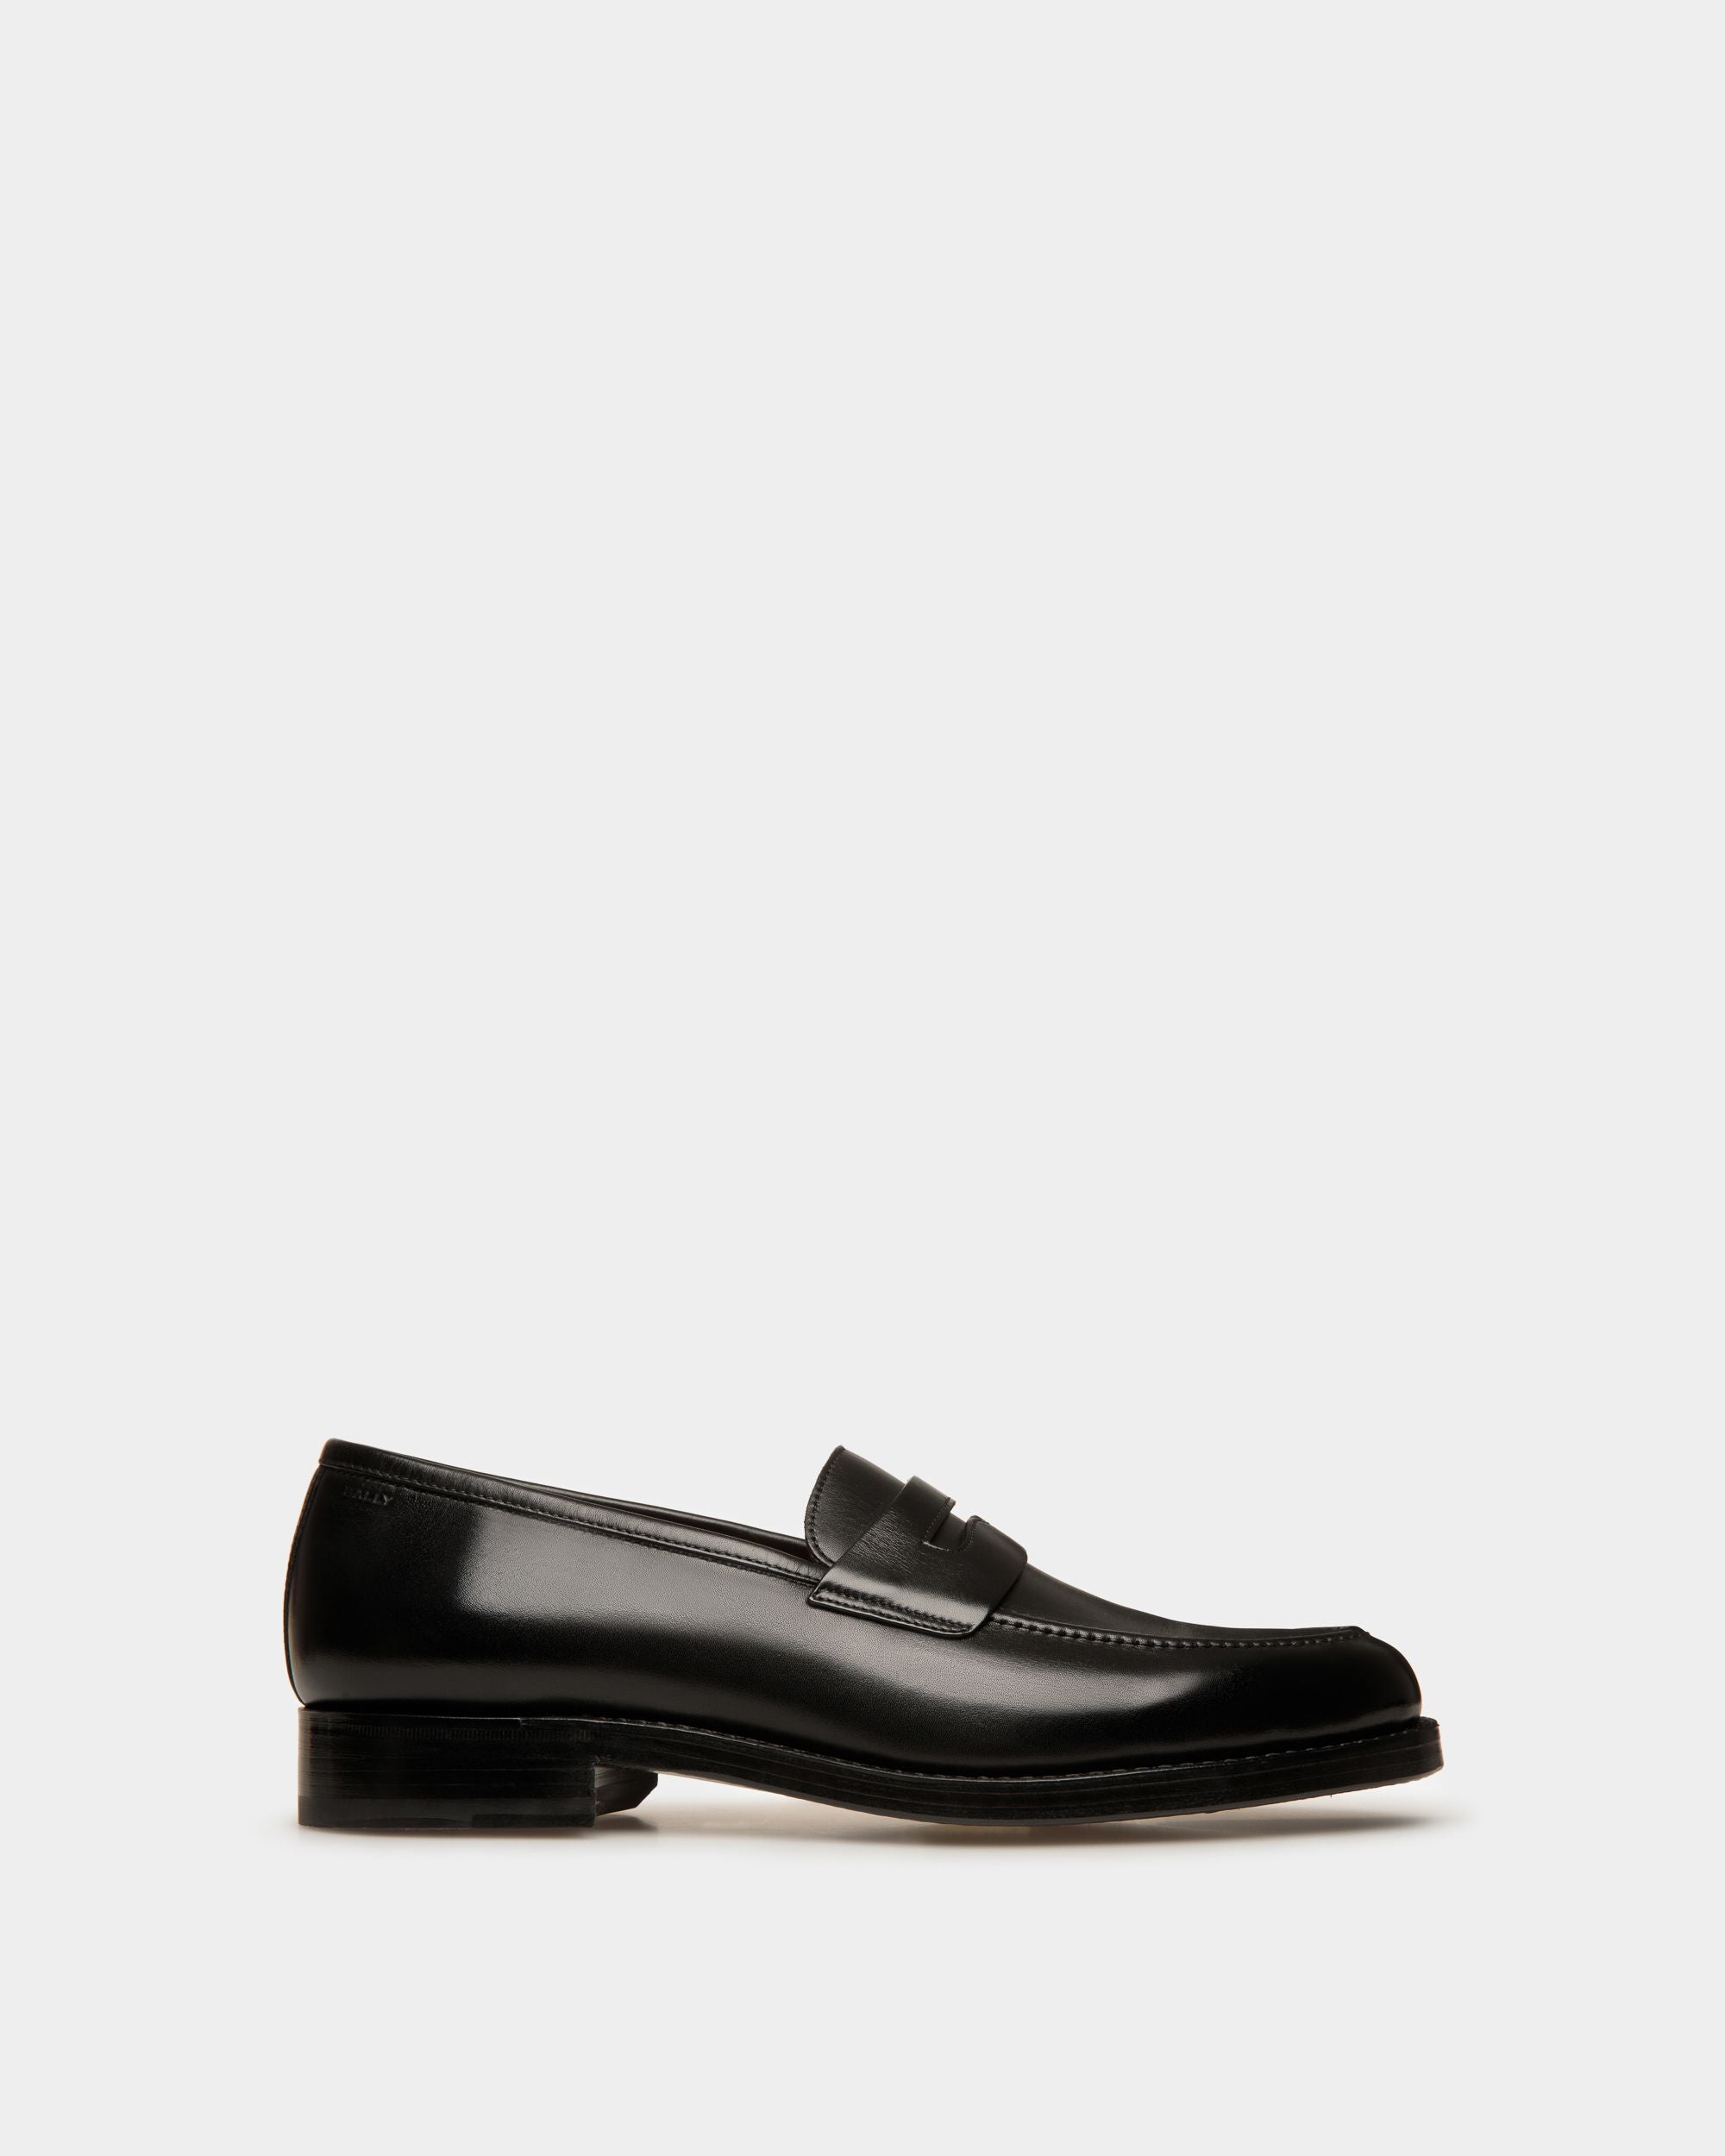 Schoenen | Herren-Loafer aus schwarzem Leder | Bally | Still Life Seite